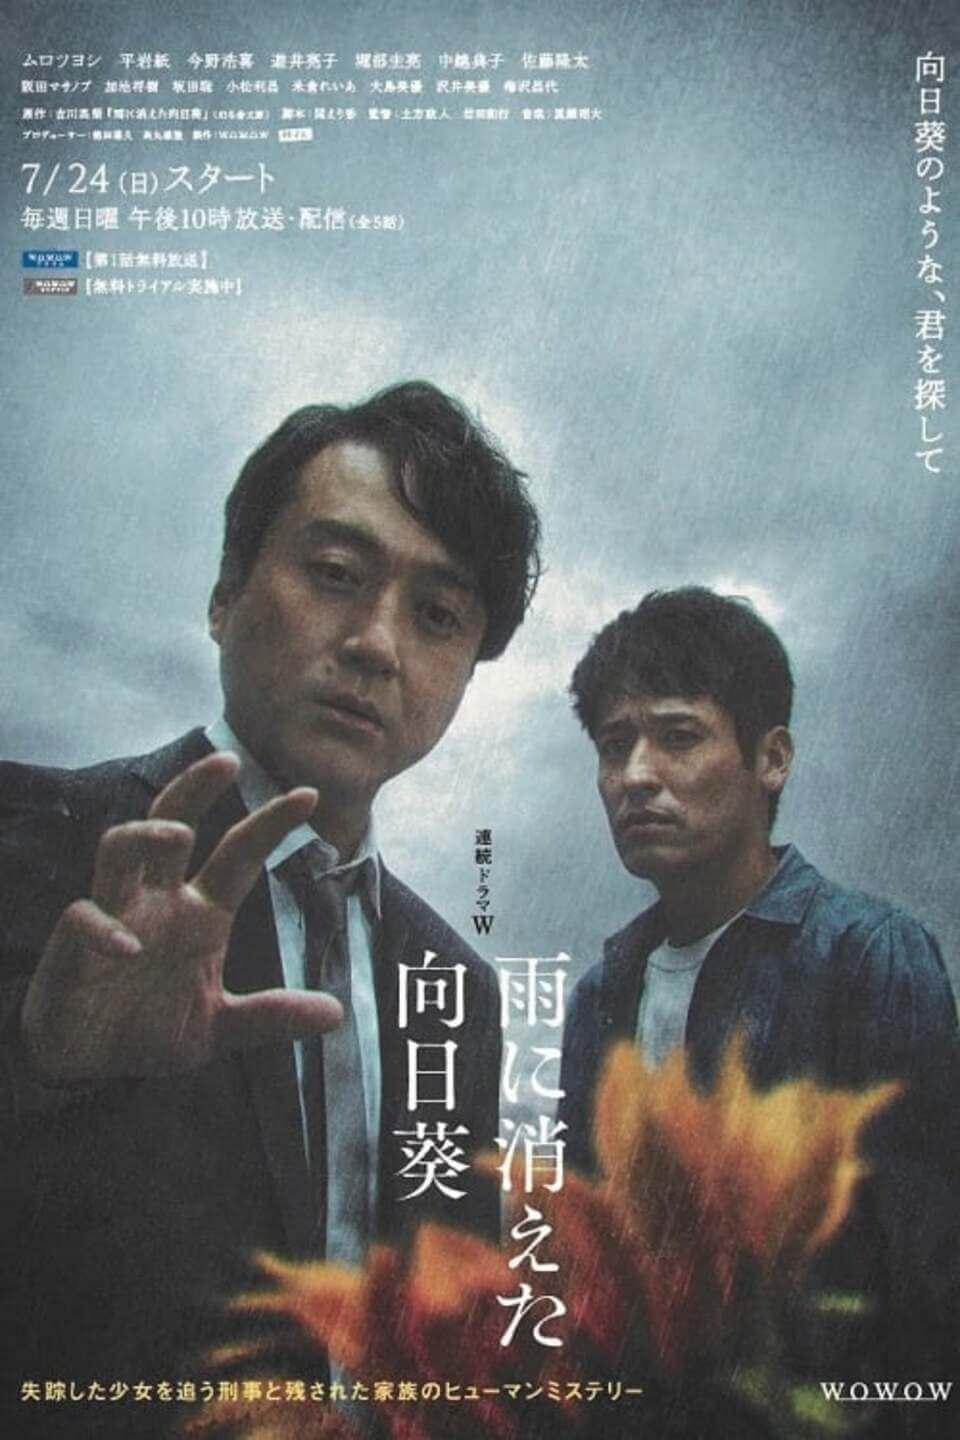 TV ratings for Ame Ni Kieta Himawari (雨に消えた向日葵) in Russia. Netflix TV series